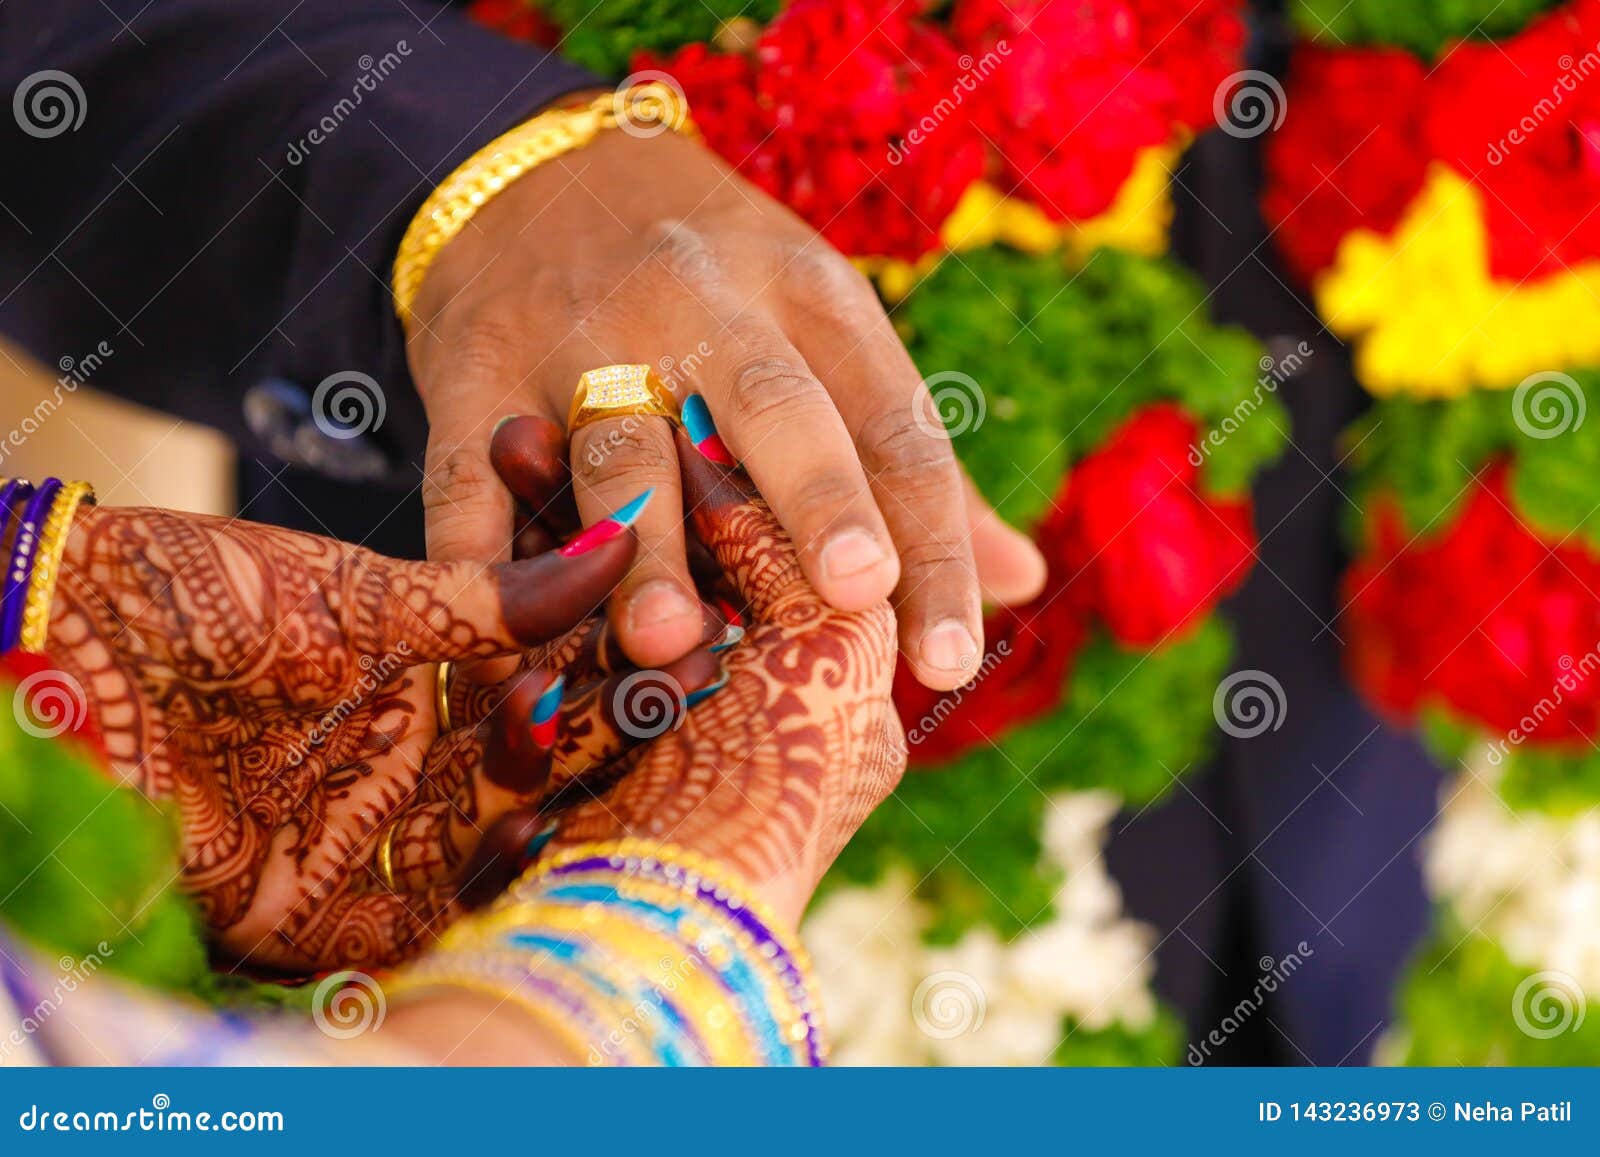 Wedding ring ceremony - Stock Image - Everypixel